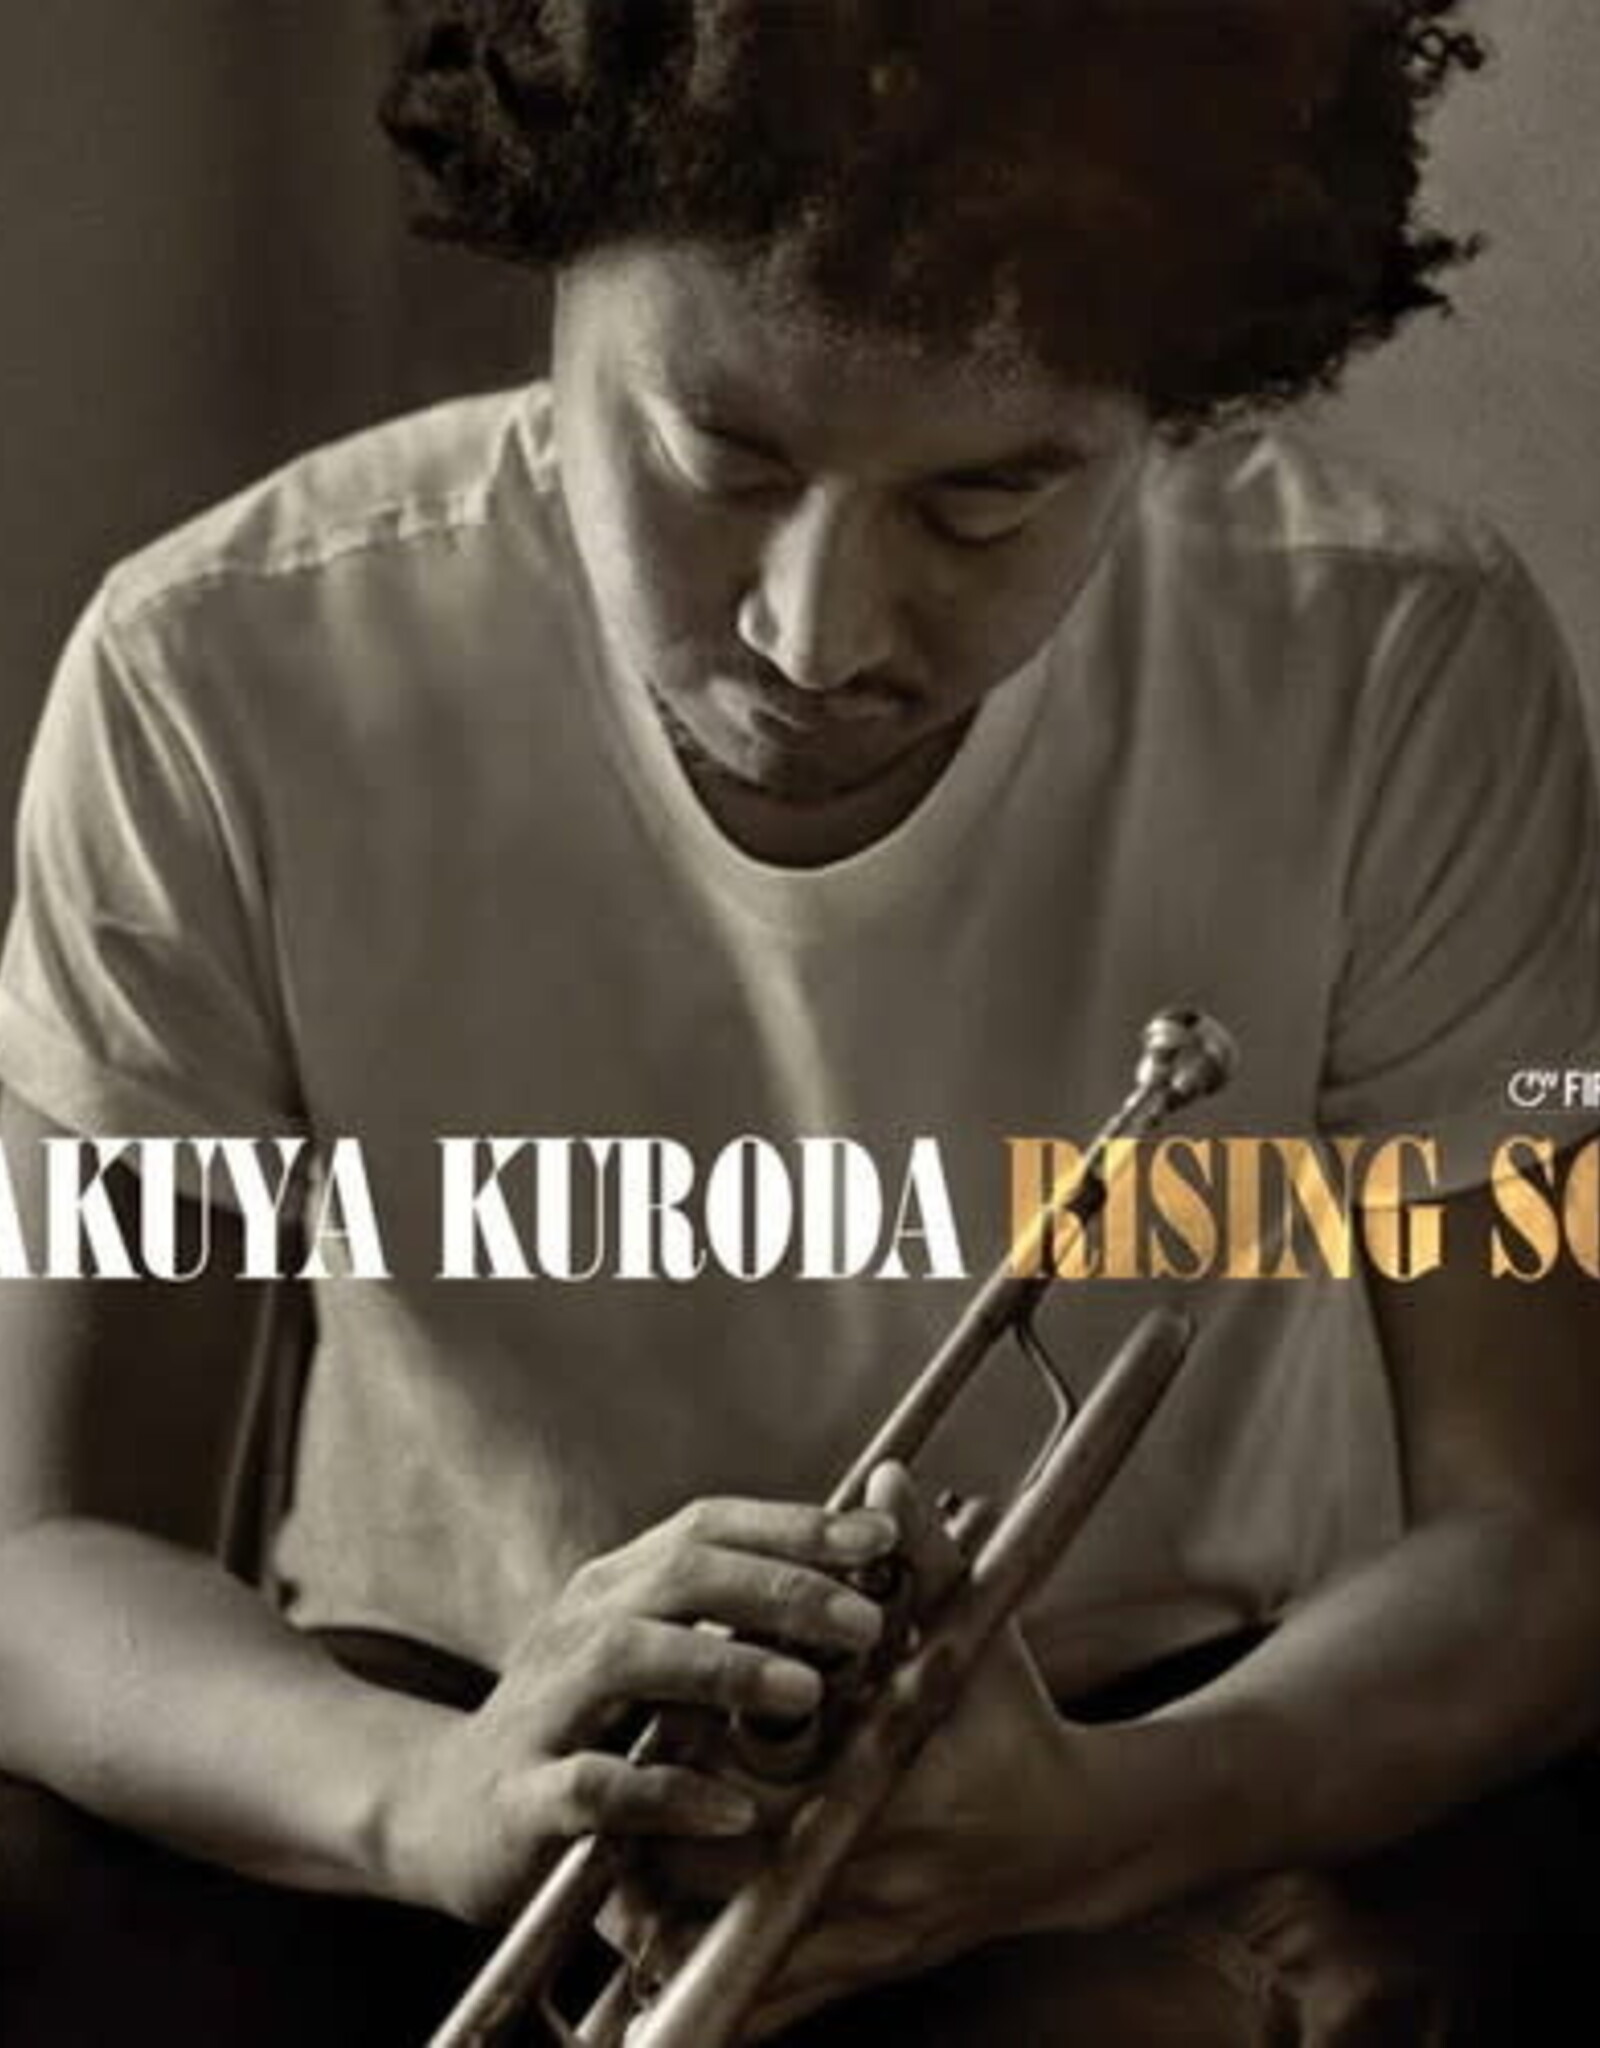 Takuya Kuroda - Rising Son